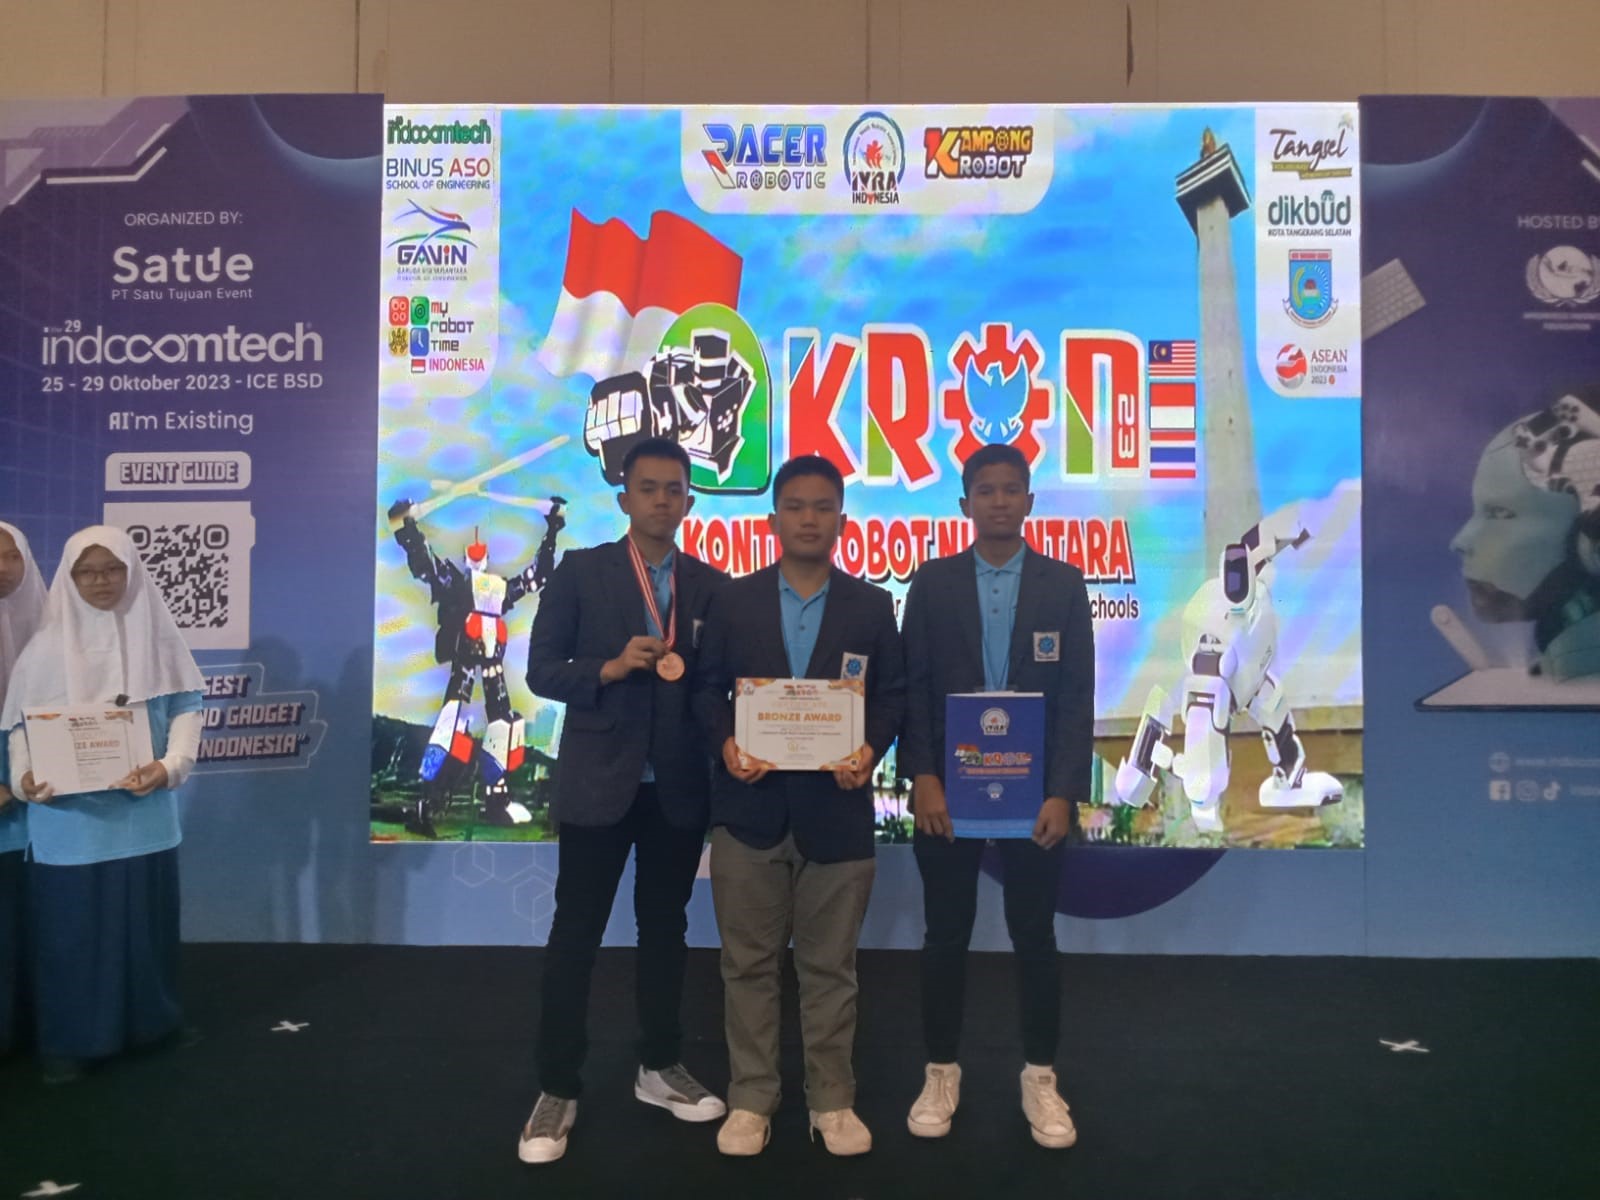 Konteskan Agric Robot, Siswa MAN IC OKI Sabet Bronze Medali Kontes Robot Tingkat ASEAN